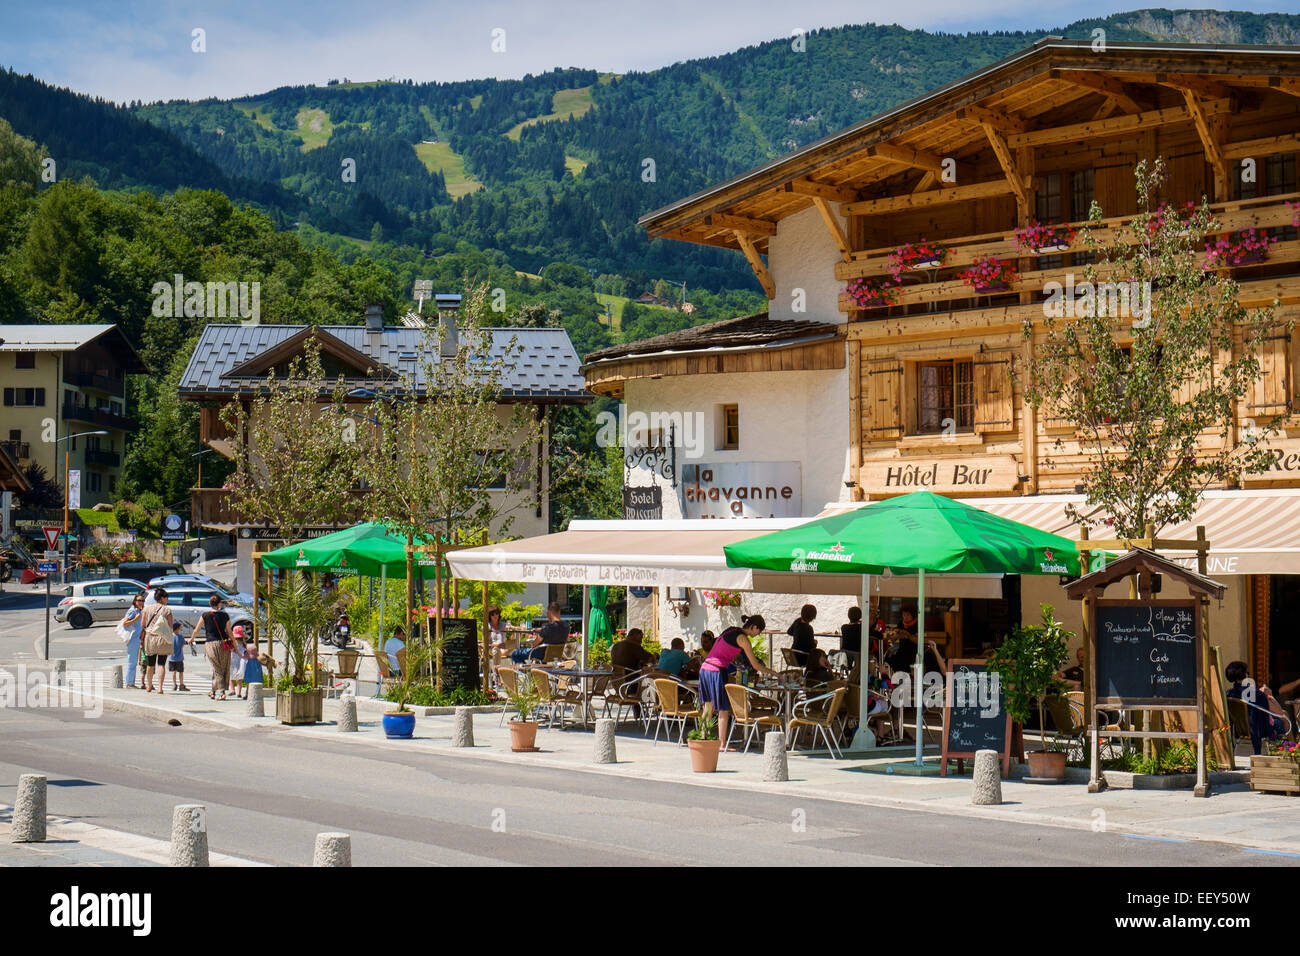 Cafe-Bar in einem Hotel in Les Houches Skigebiet Chamonix, Französische Alpen, Haute-Savoie, Frankreich, Europa - im Sommer Stockfoto